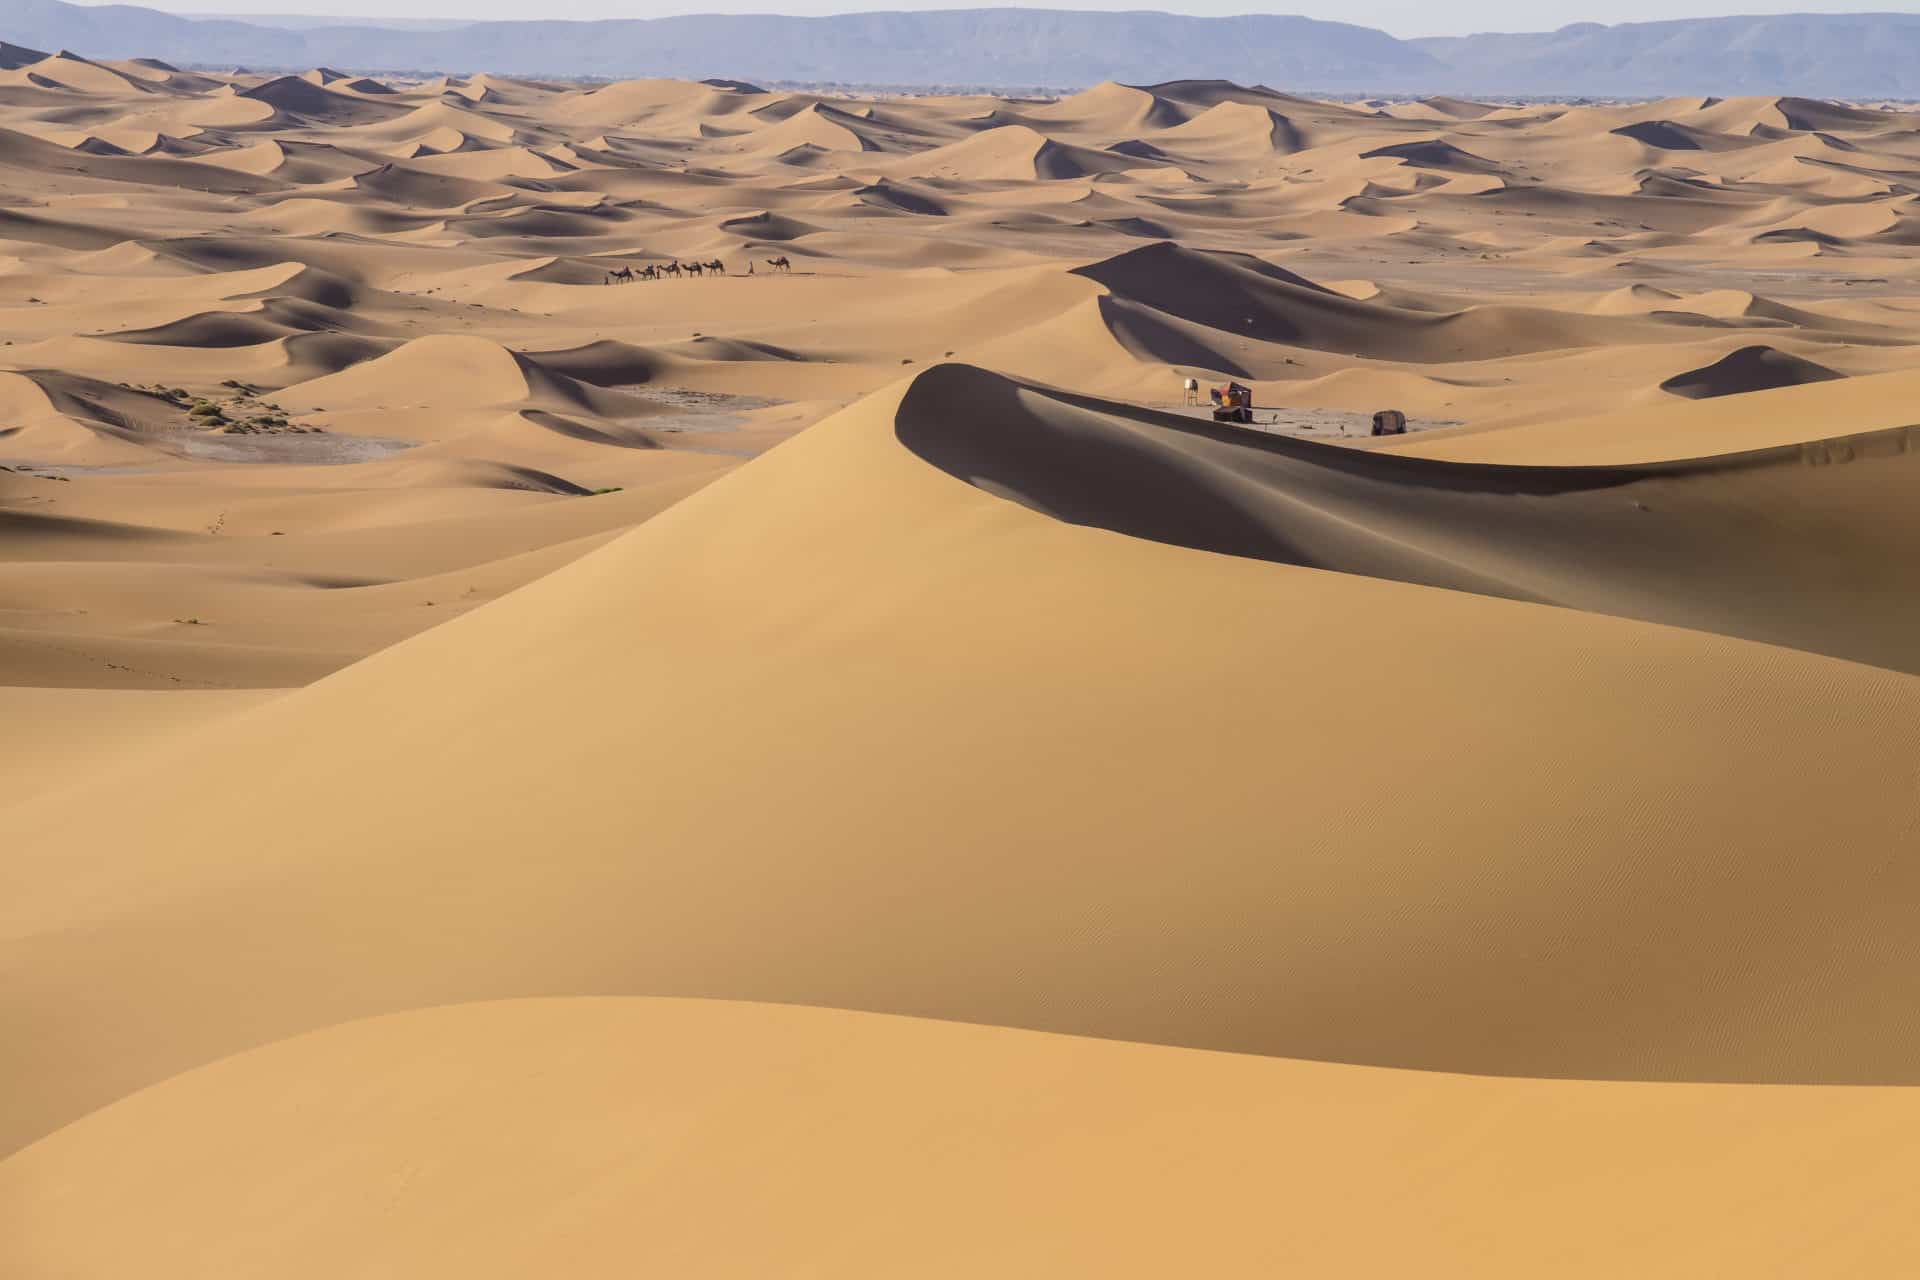 Erg Chigaga Caravan in Sahara Desert